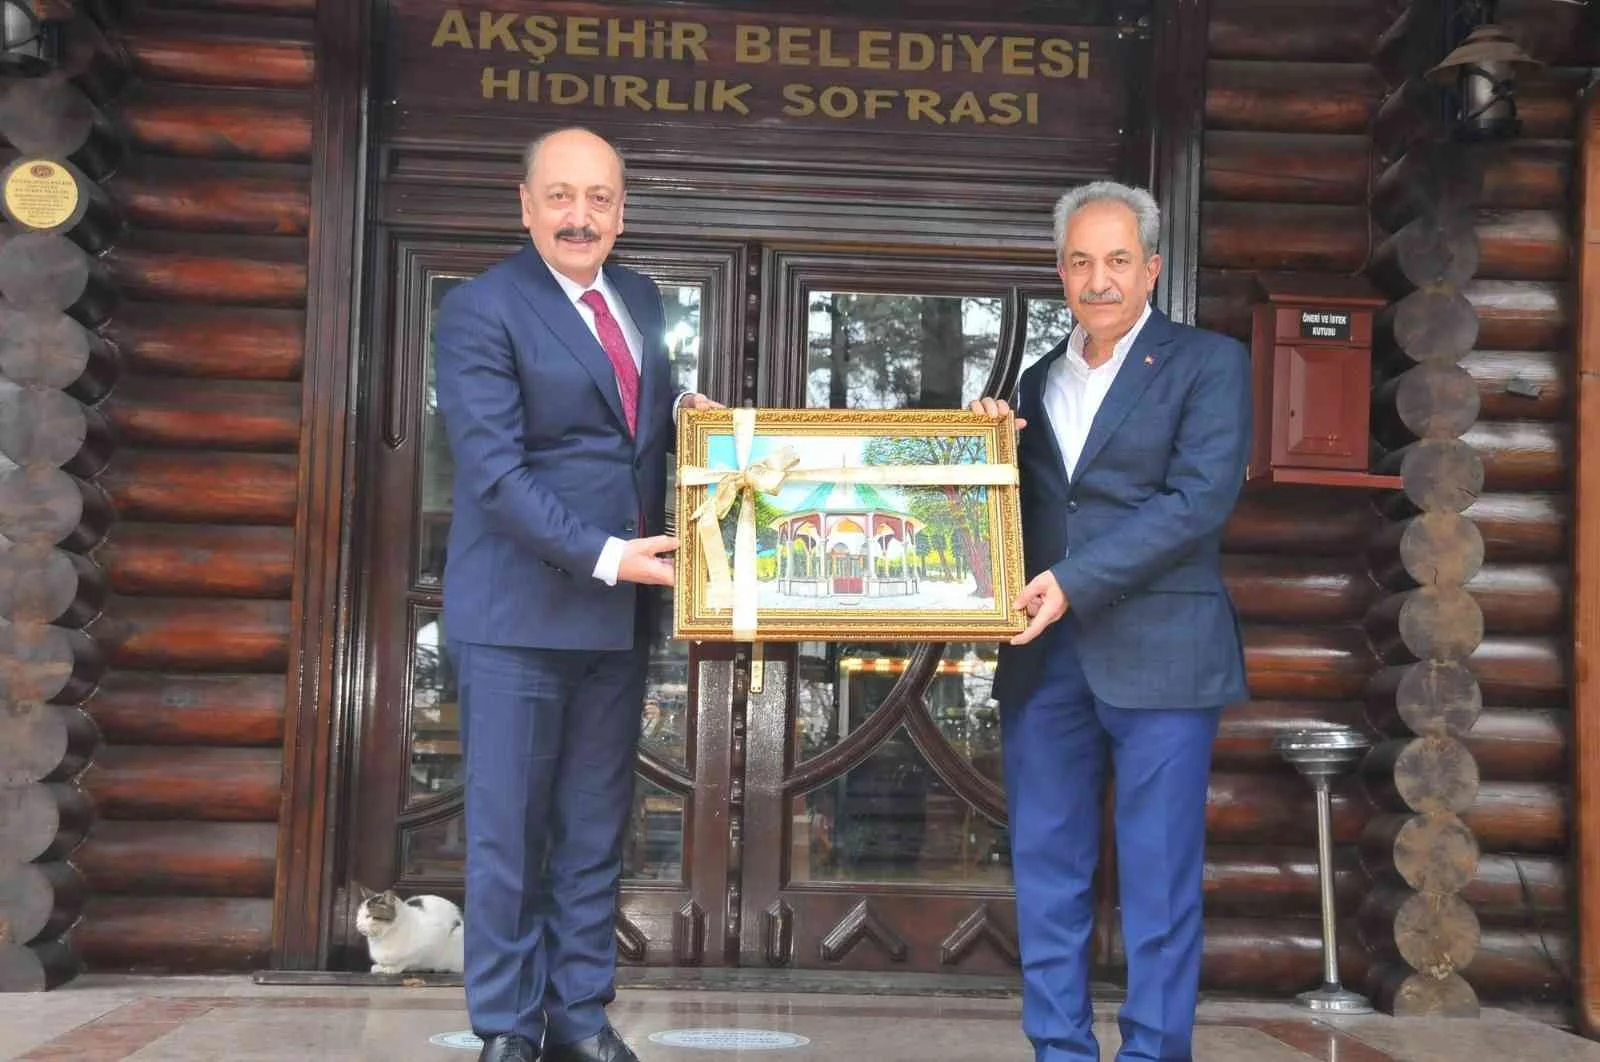 Çalışma ve Sosyal Güvenlik Bakanı Bilgin Akşehiri ziyaret etti